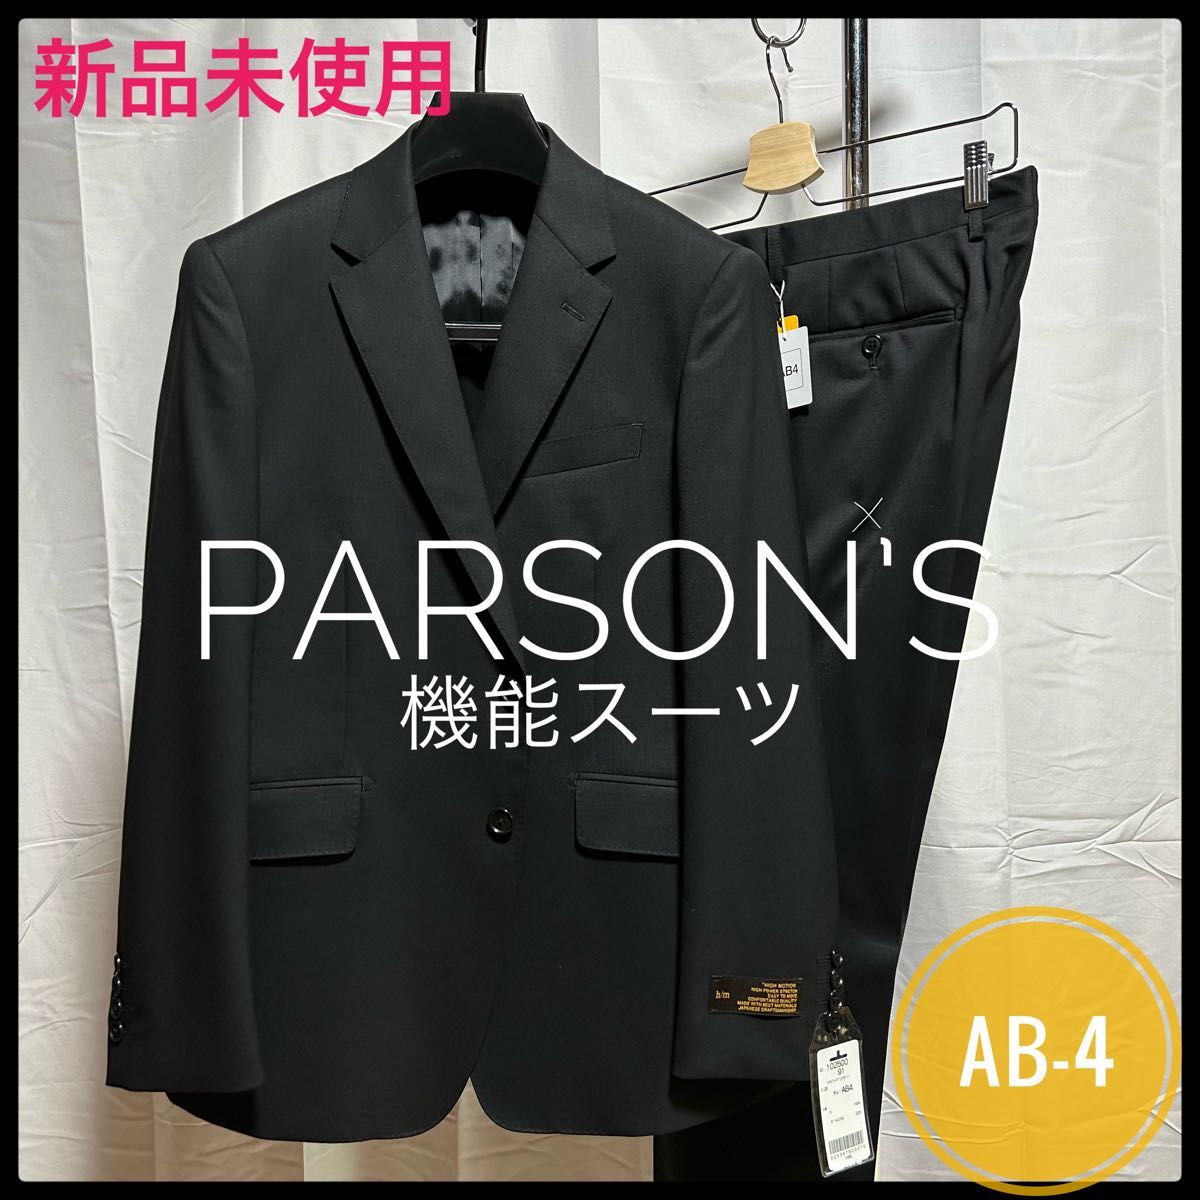 新品未使用/AB-4【PERSON'S】就活/ビジネススーツ/ブラックスーツ/機能素材